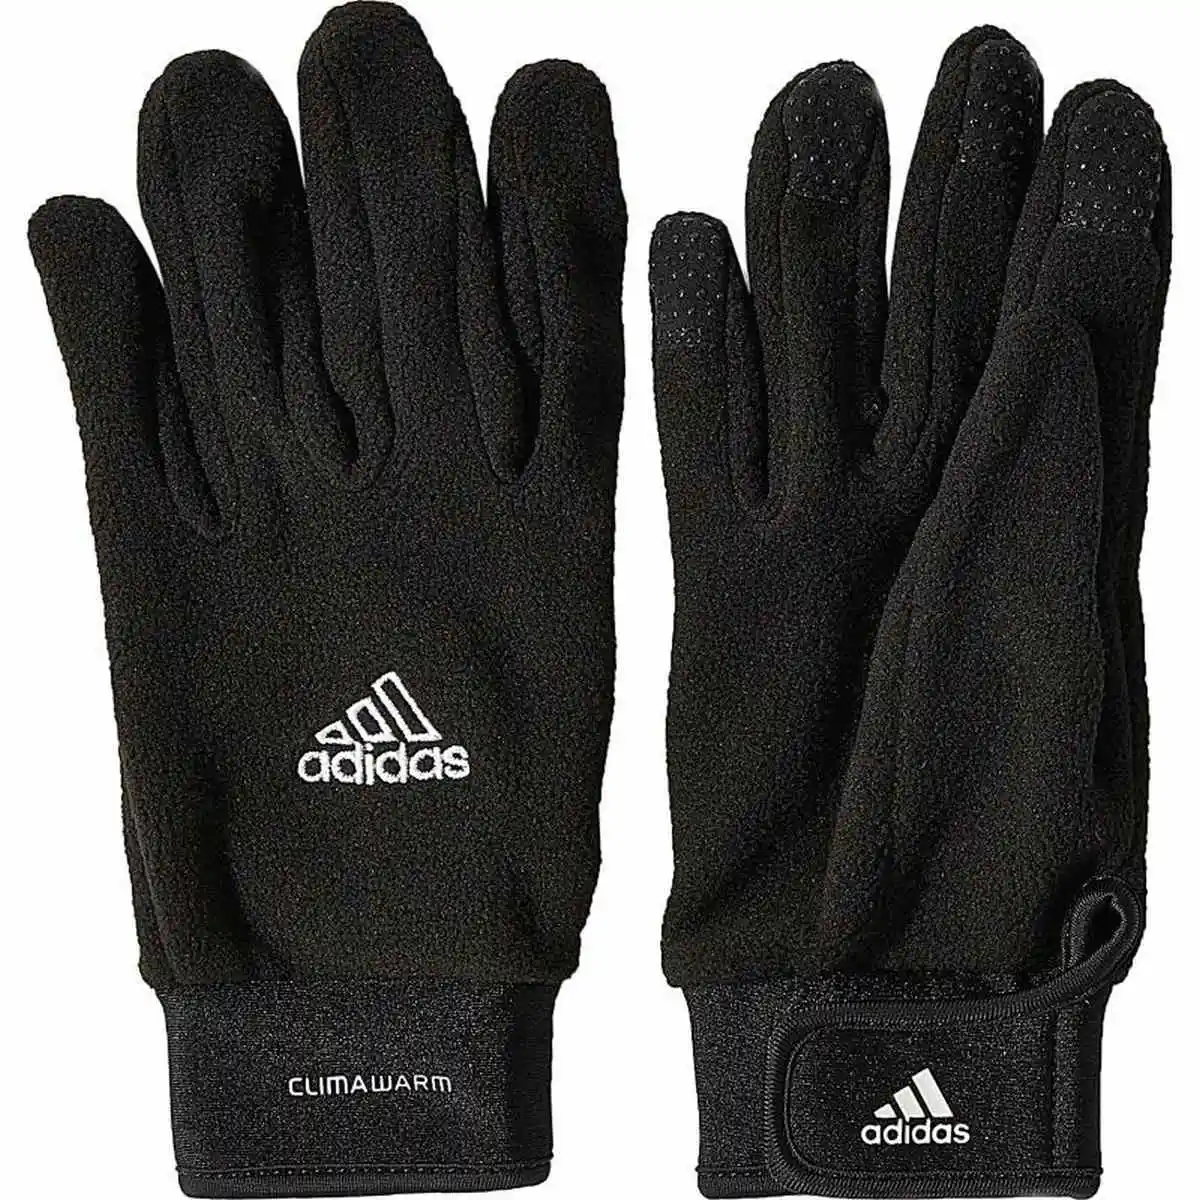 Narabar Maak leven Maken Adidas Fieldplayer Handschoenen - Handschoenen (speler) - Accessoires -  Voetbal - Intersport van den Broek / Biggelaar